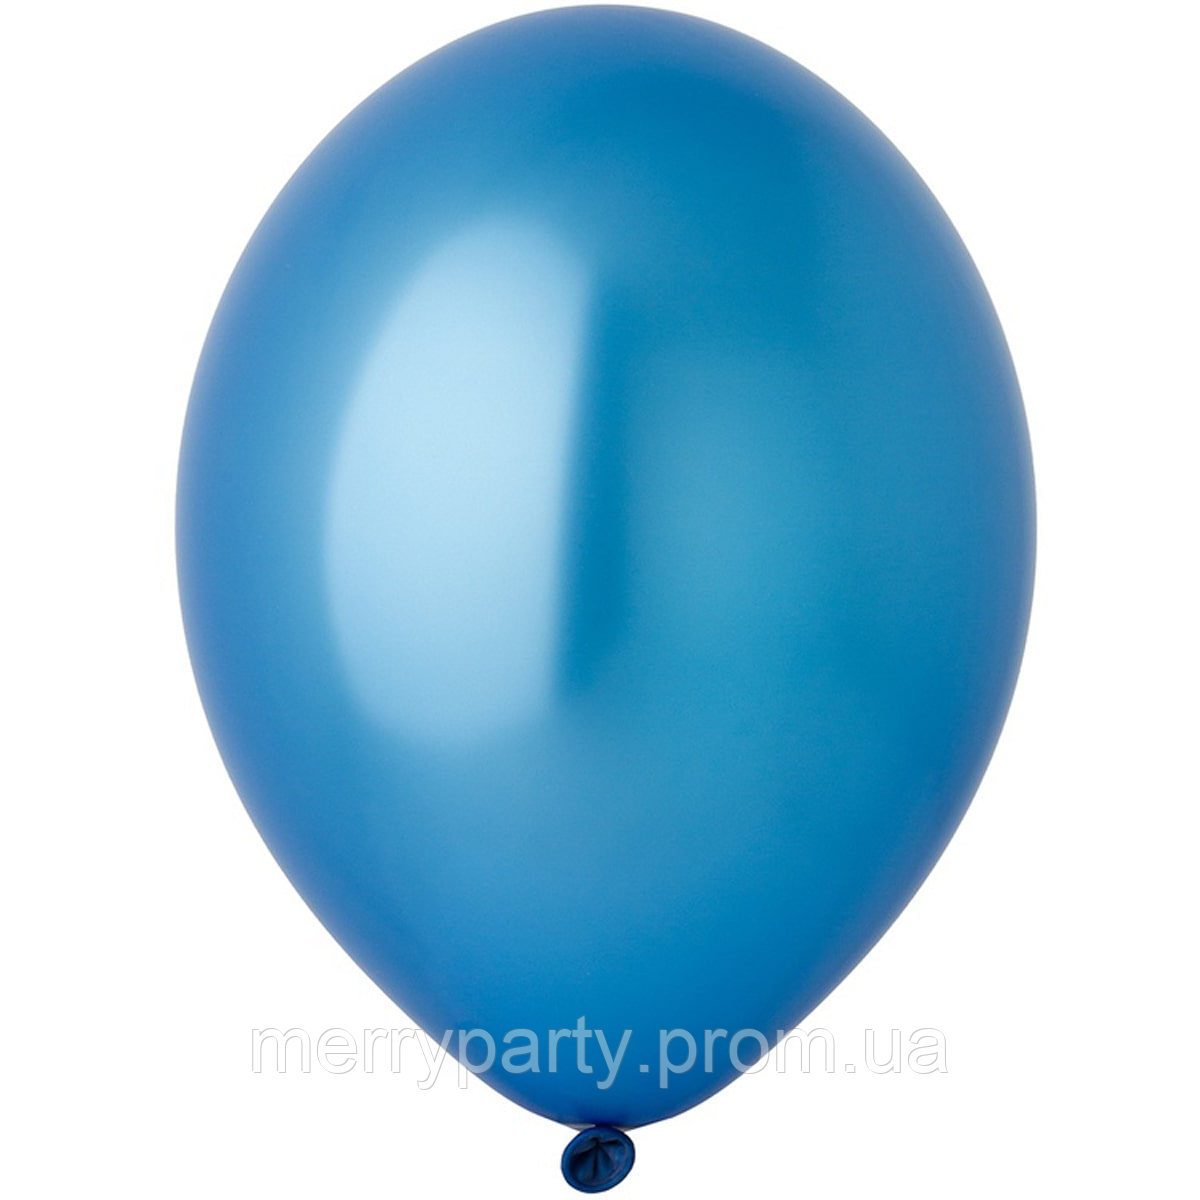 12" (30 см) металлик голубой 105/065 Belbal Польша латексный шар